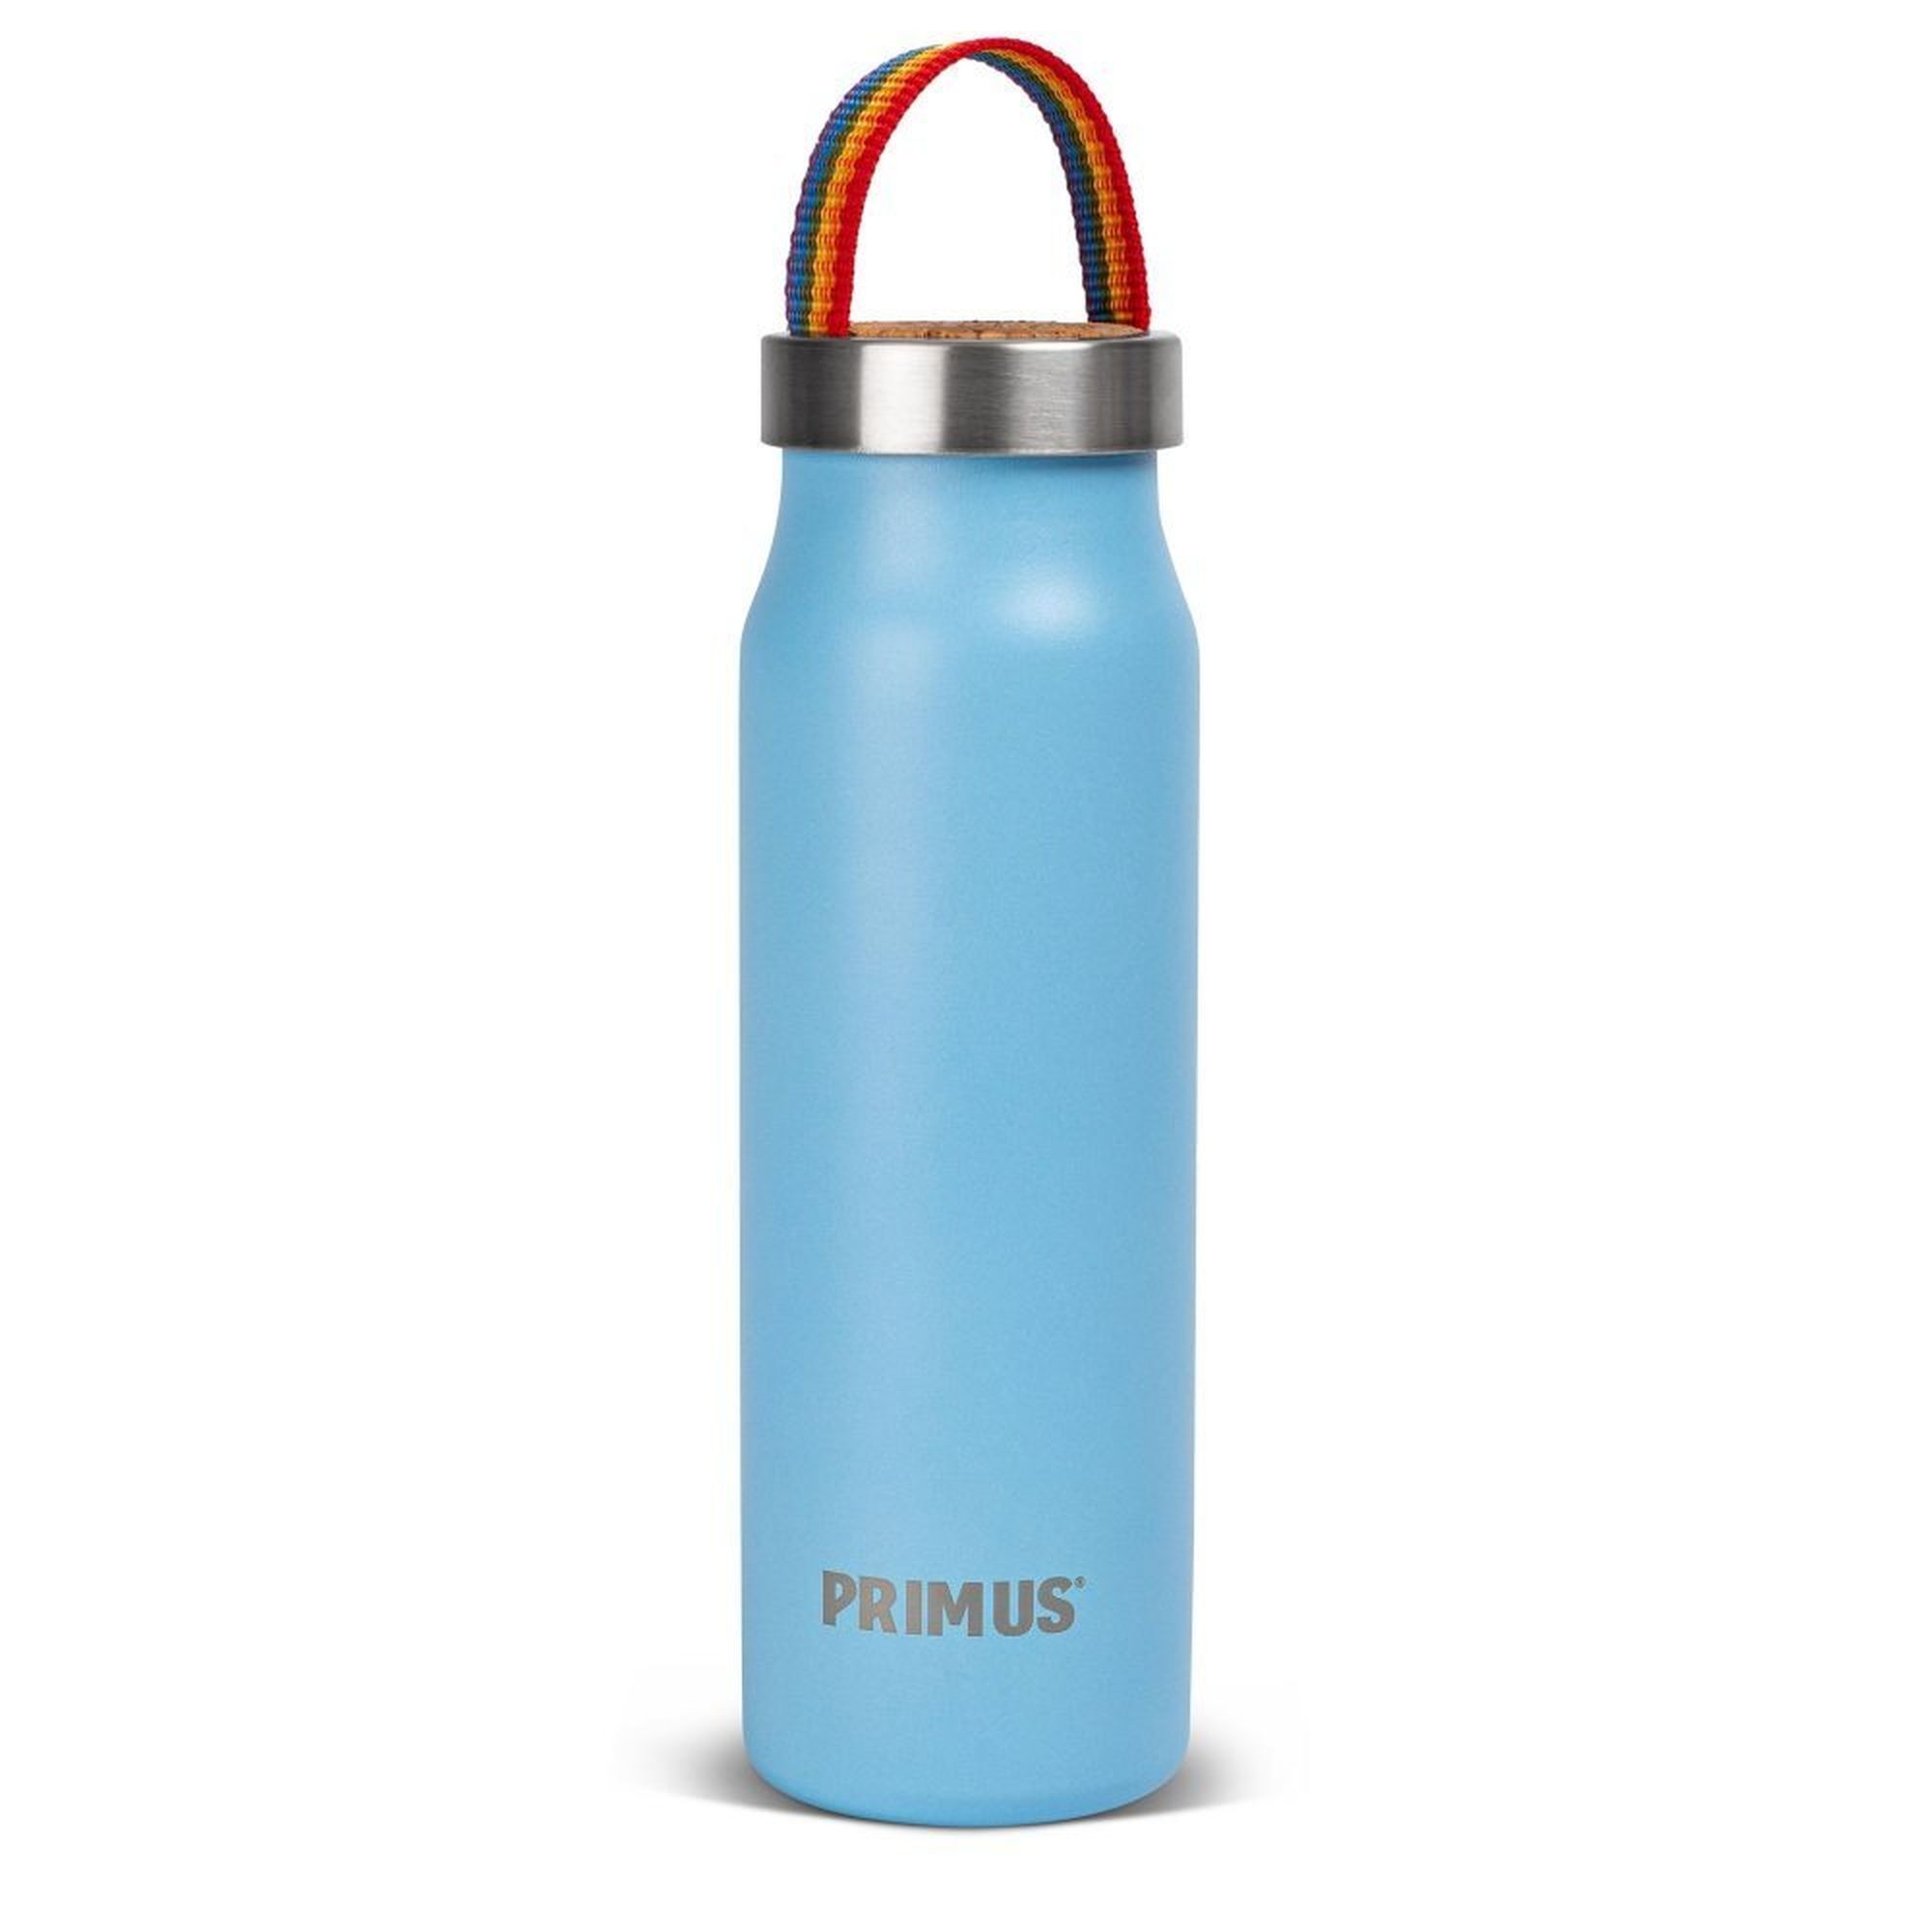 Primus Klunken Vacuum Bottle 0.5L - Isolierflasche